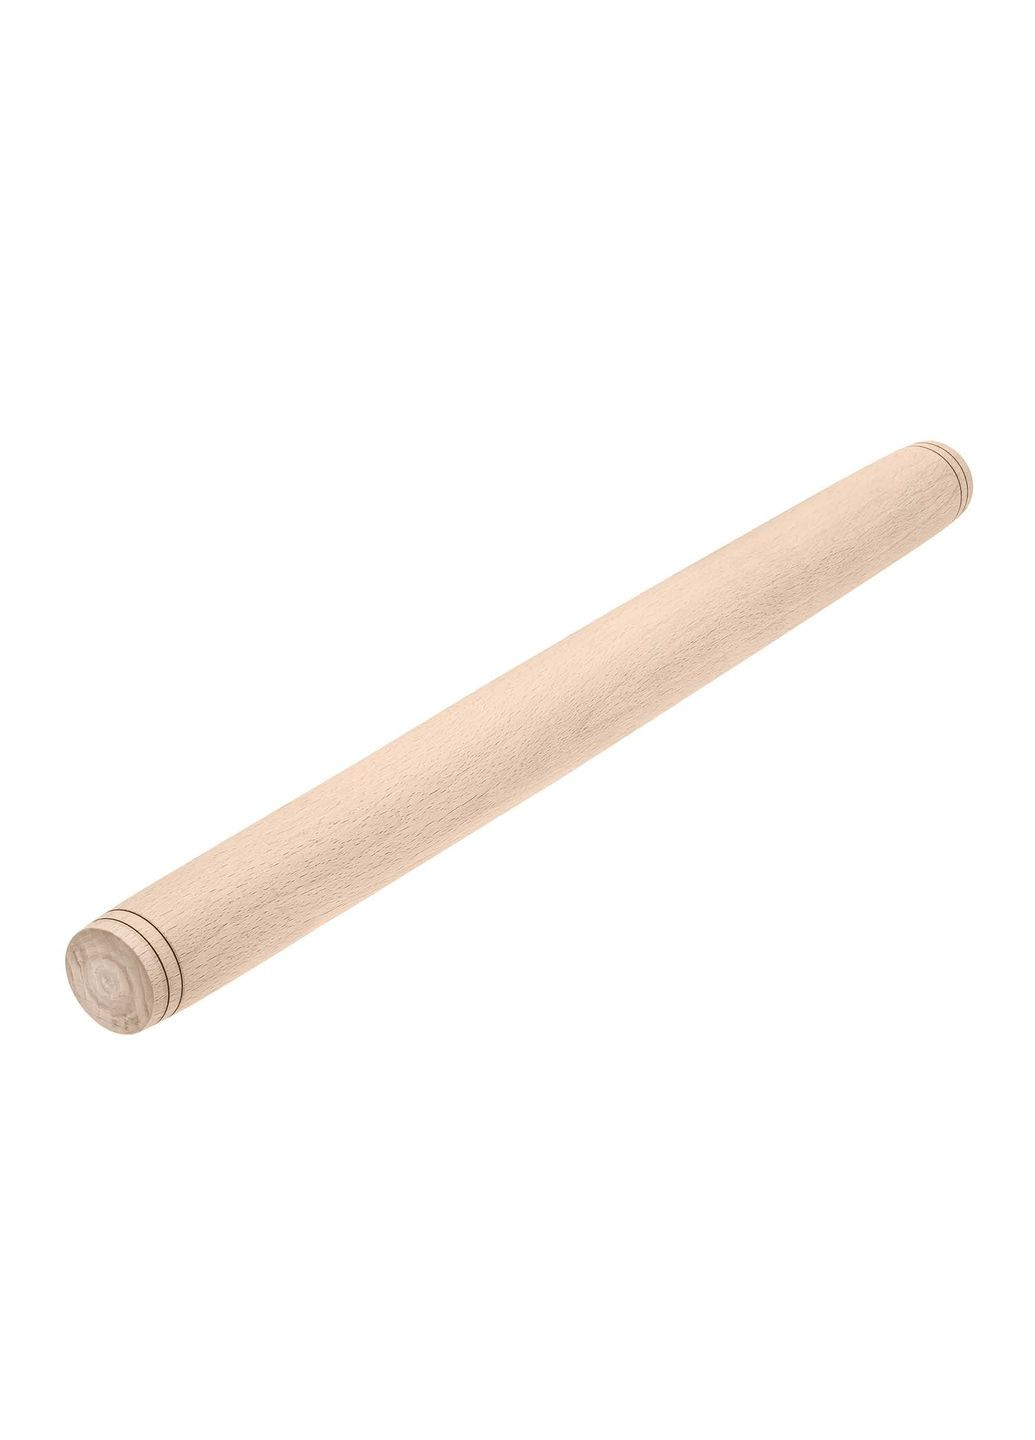 Скалка качалка деревянная ровная для пельменей 39 см Ø 2.5 см Woodly (261244999)